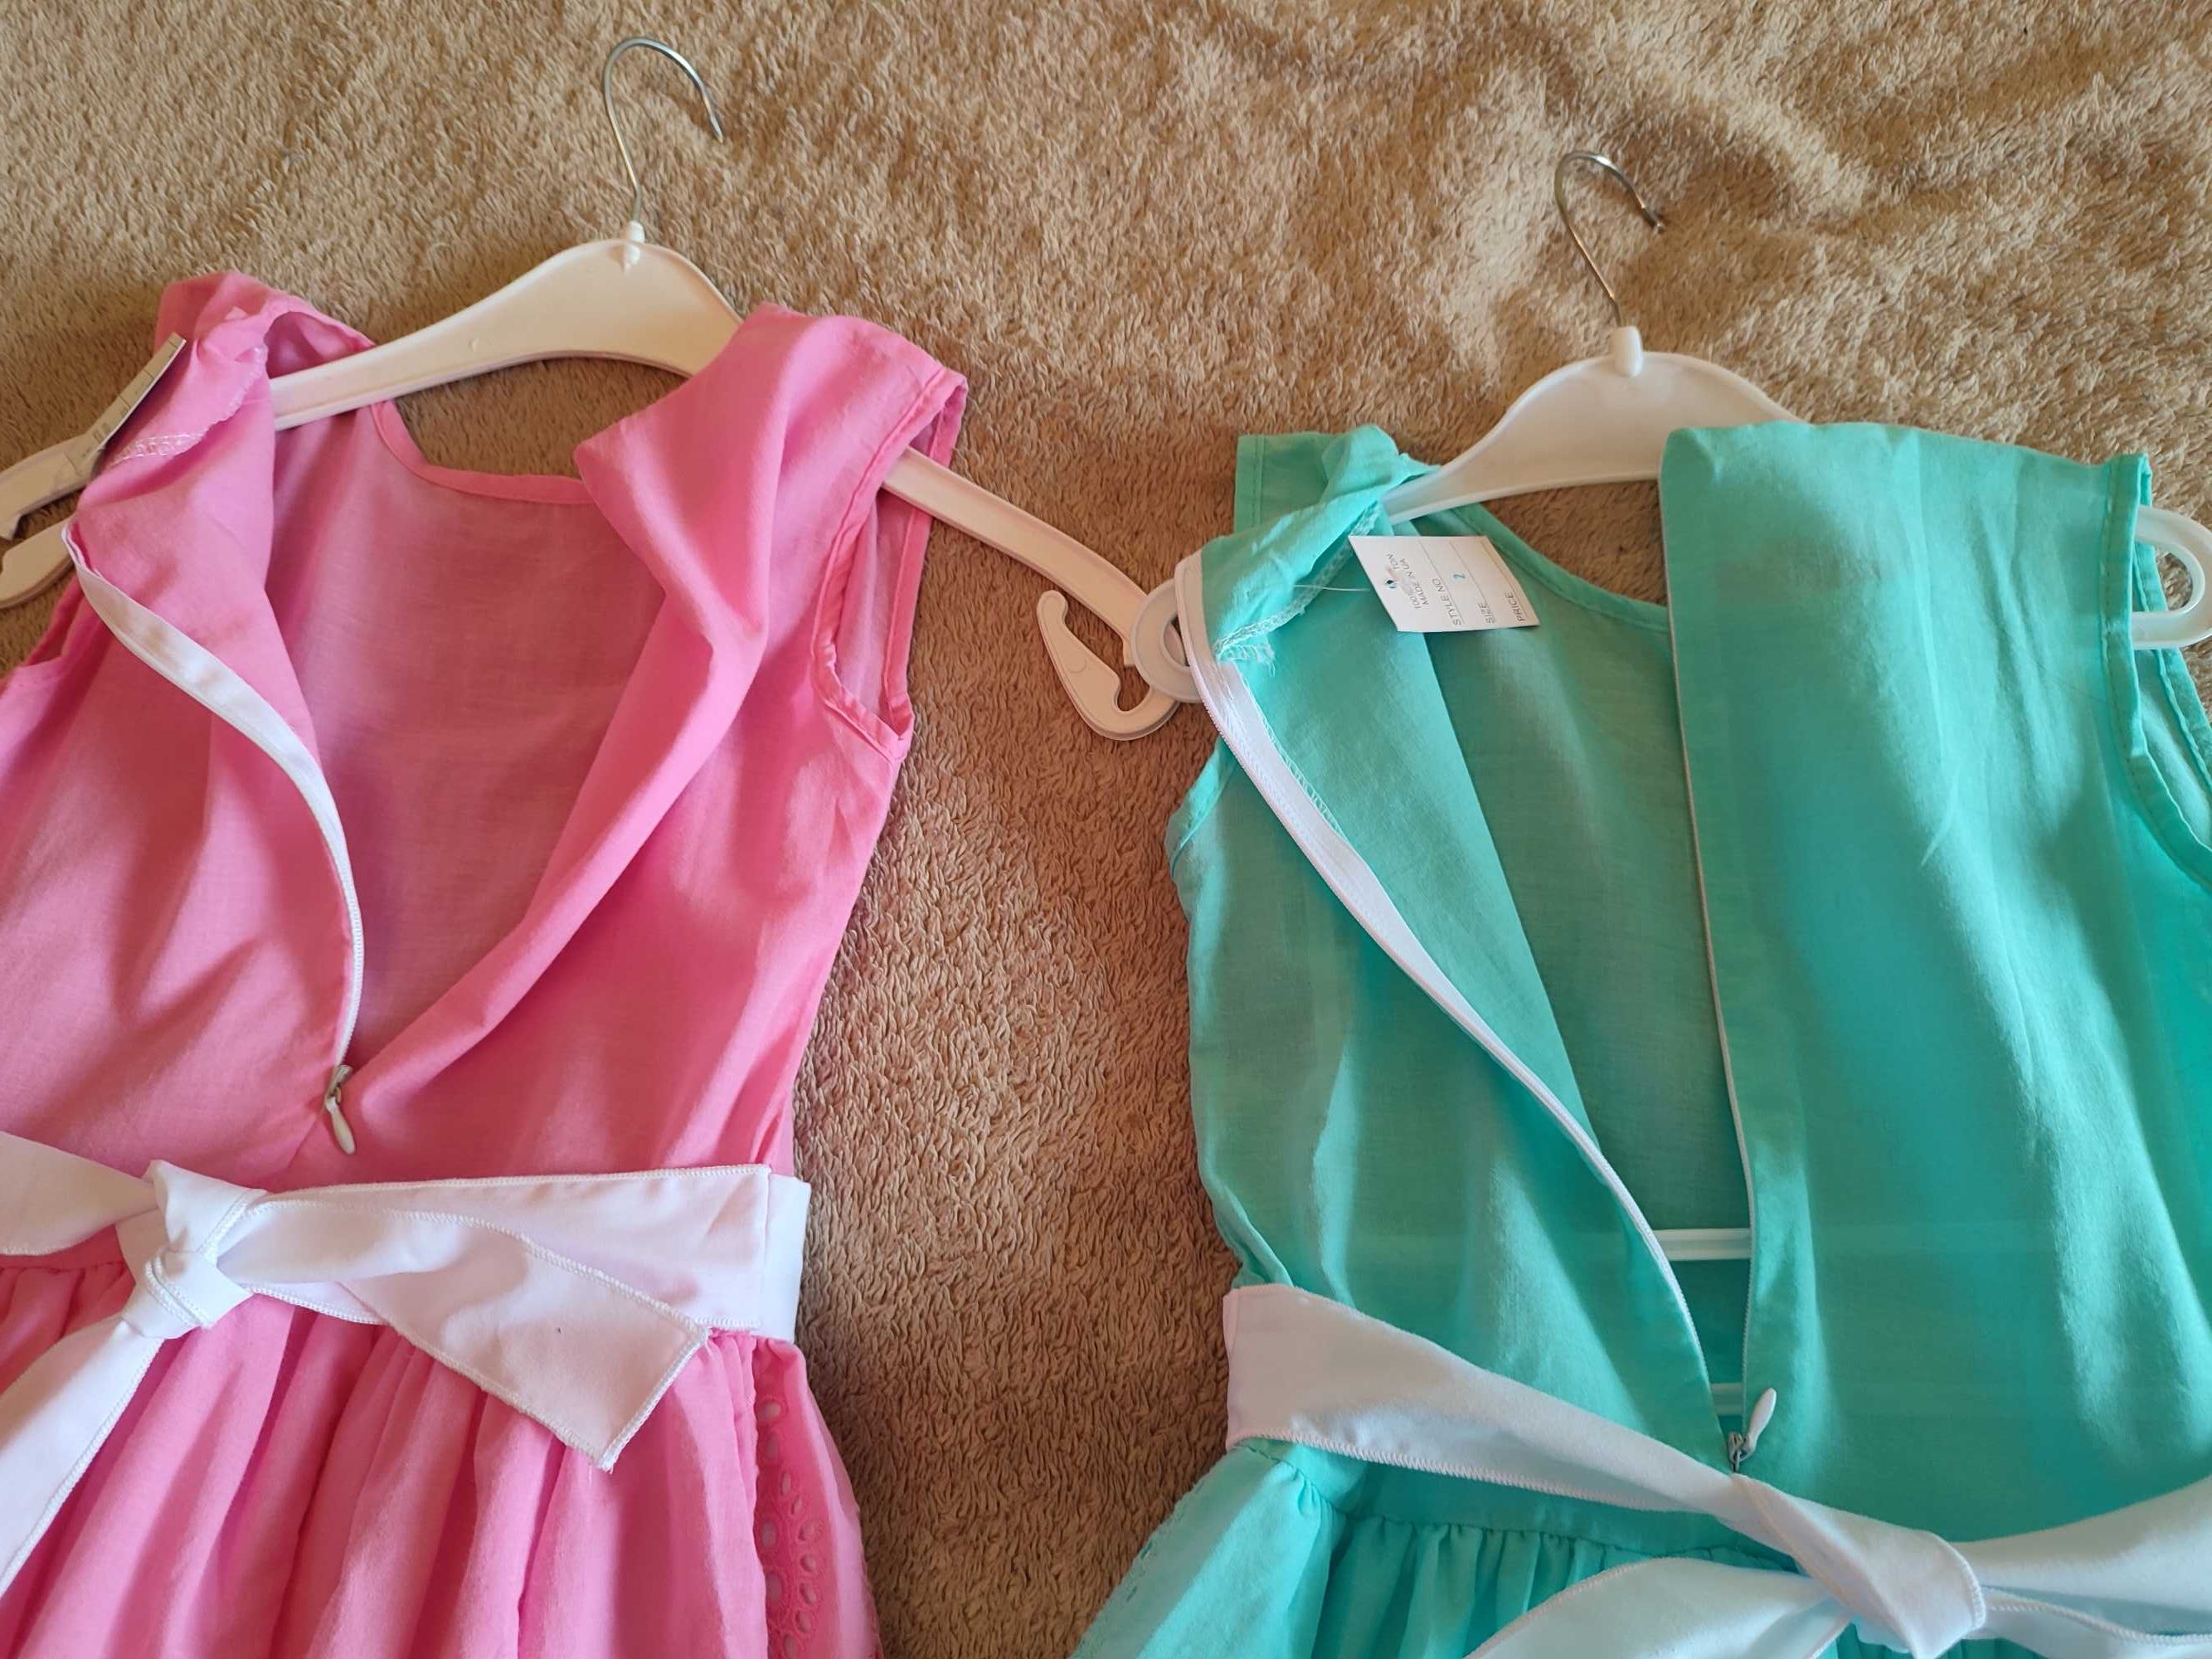 Два новых одинаковых платья на рост 128 - 132 см., розовое и бирюзовое